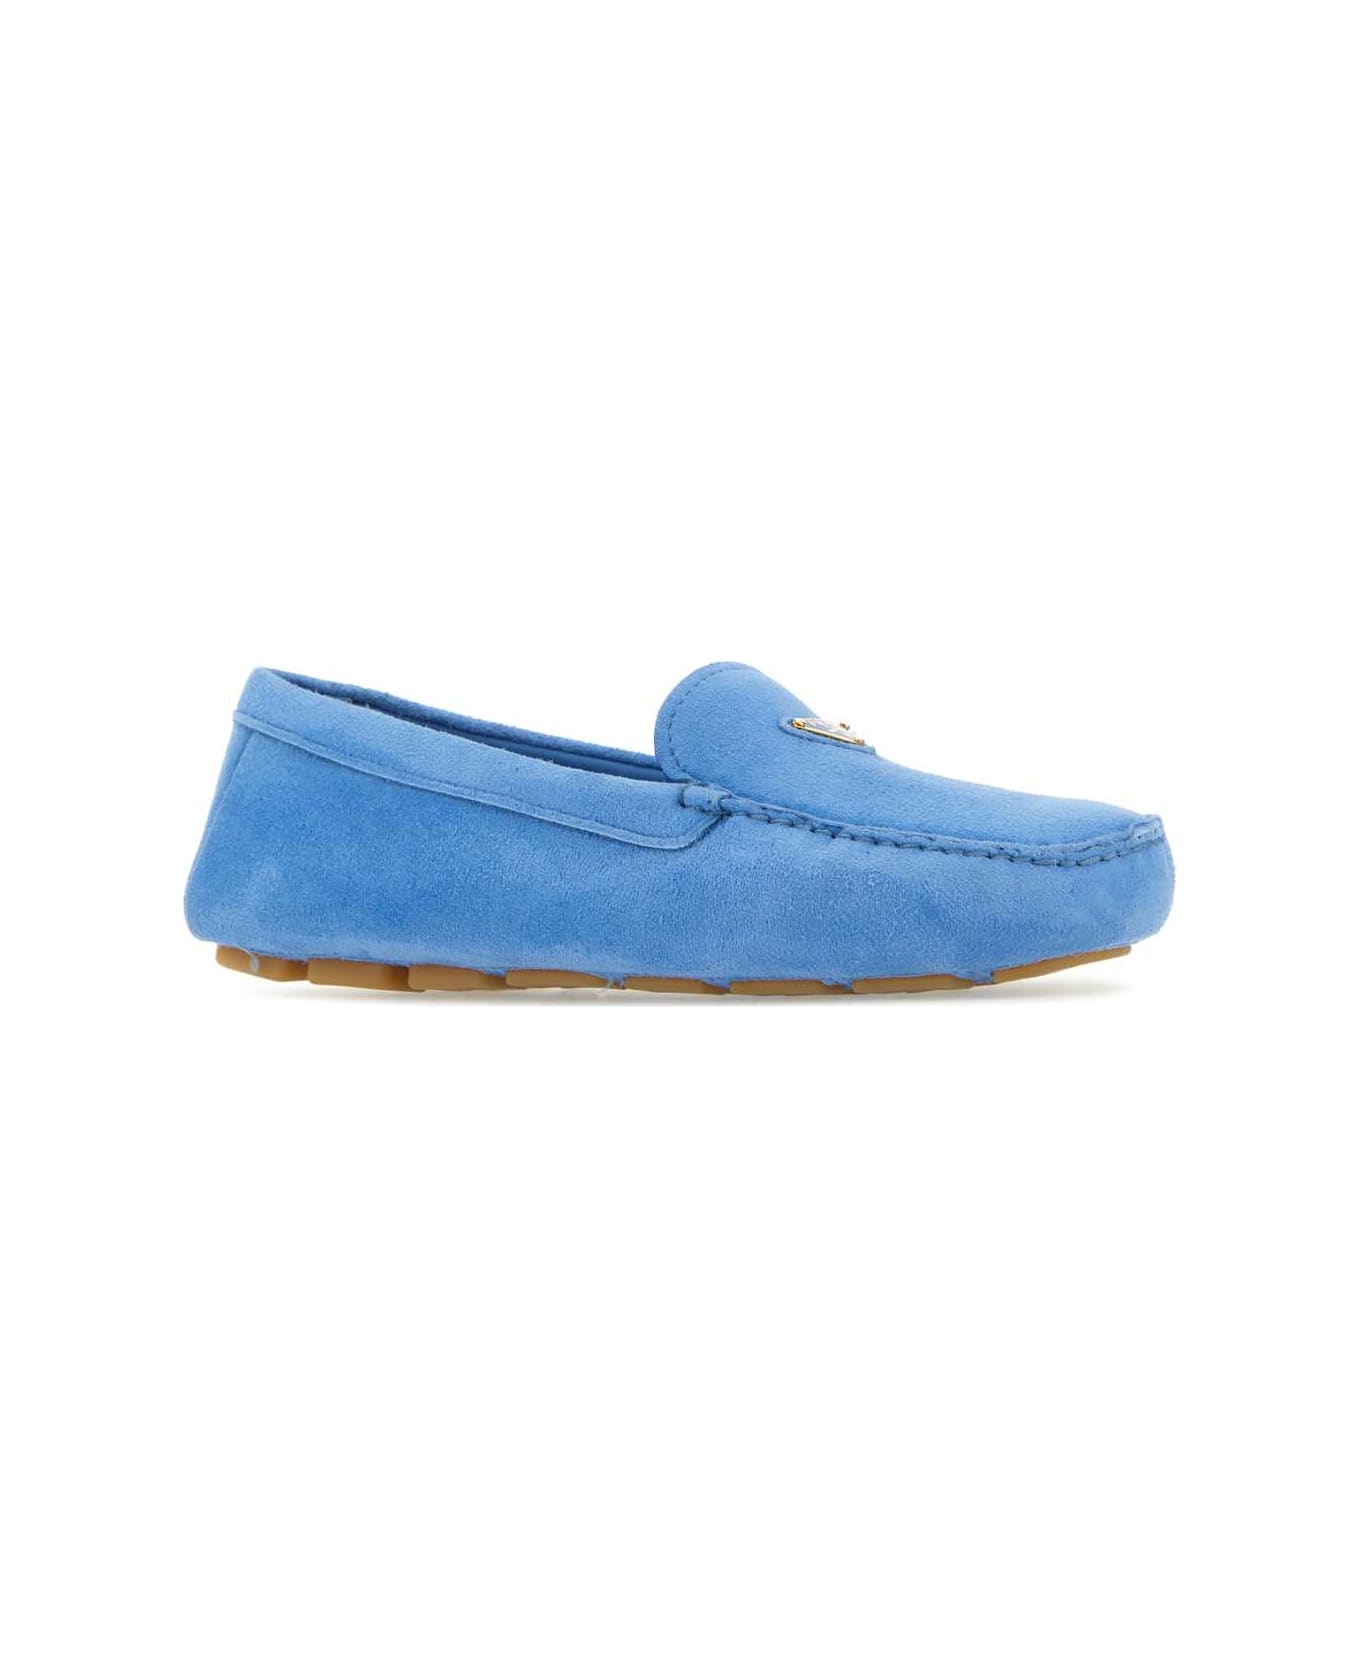 Prada Turquoise Suede Loafers - PERVINCA